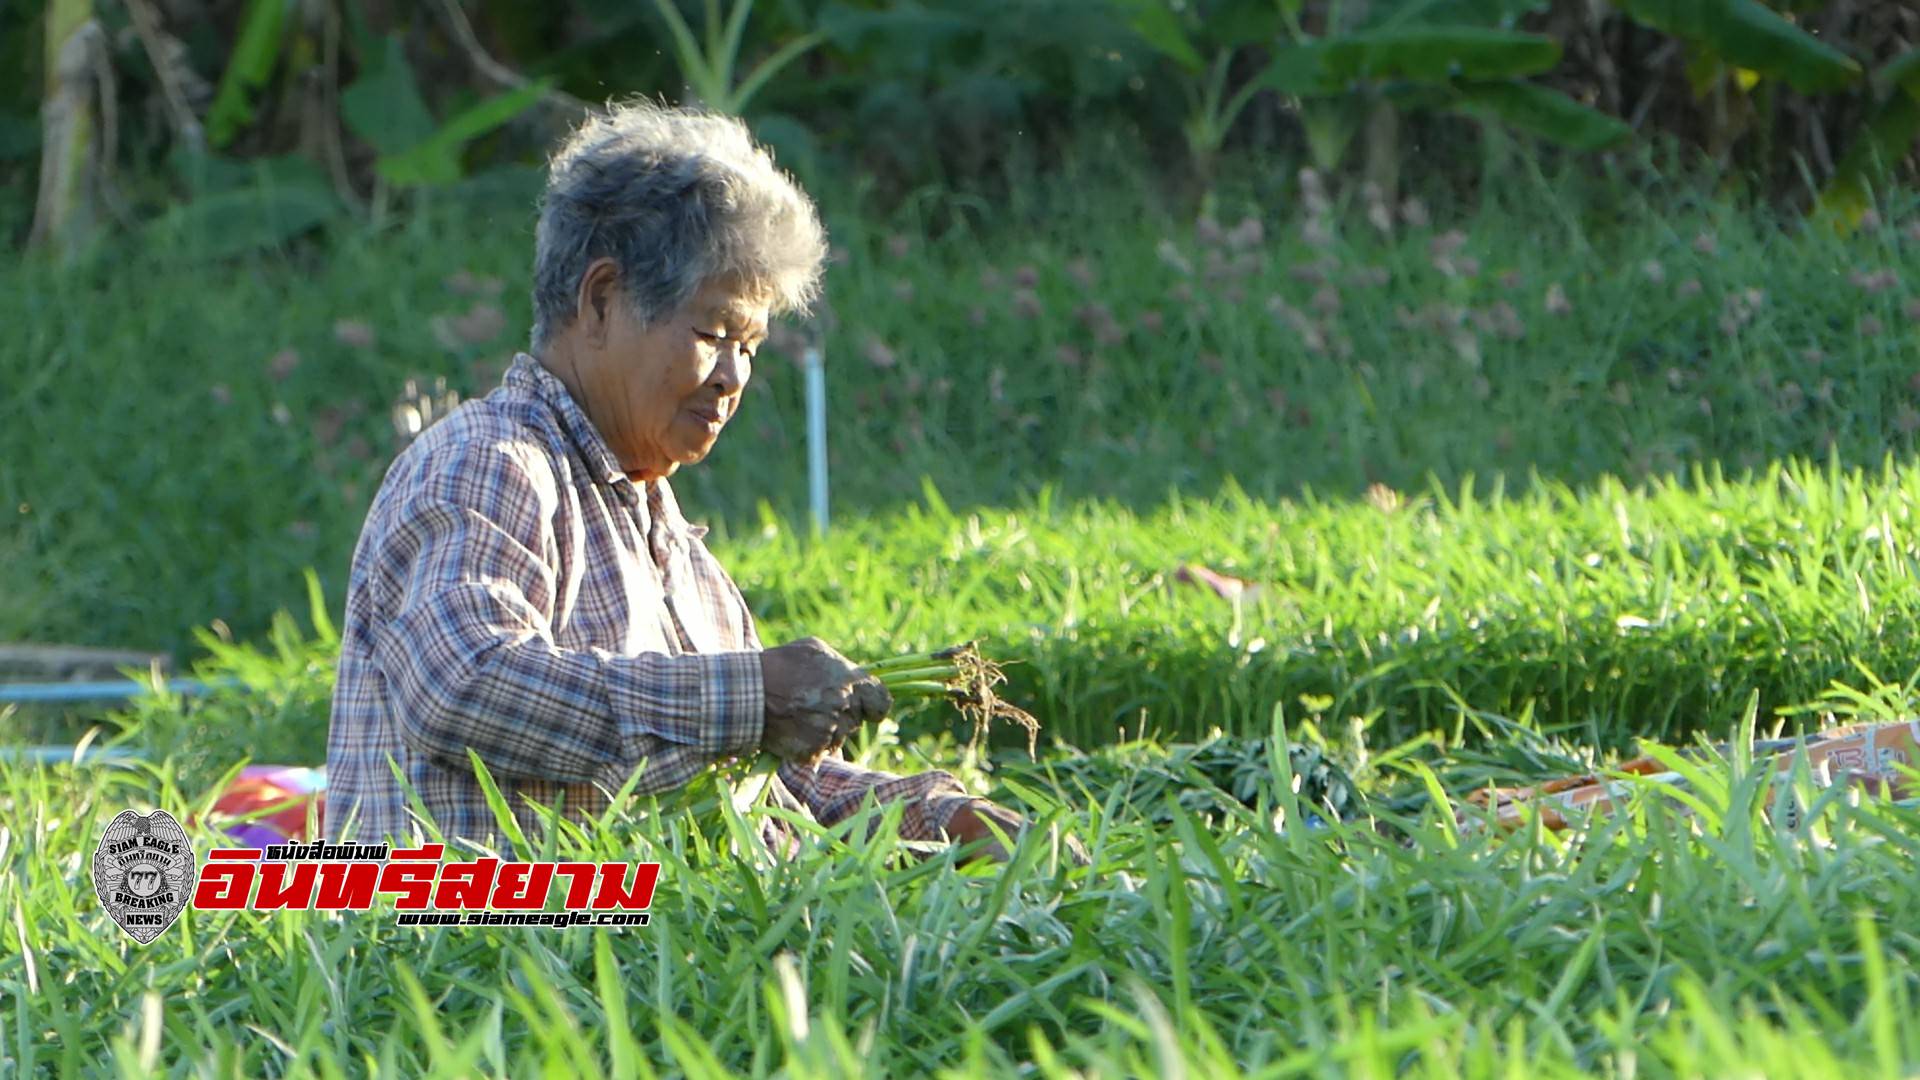 ราชบุรี-เกษตรกรผู้ปลูกผักบุ้งยิ้ม รีบเก็บผลผลิตขาย หลังอากาศเย็นราคาปรับขึ้นสูงตั้งแต่ปีใหม่